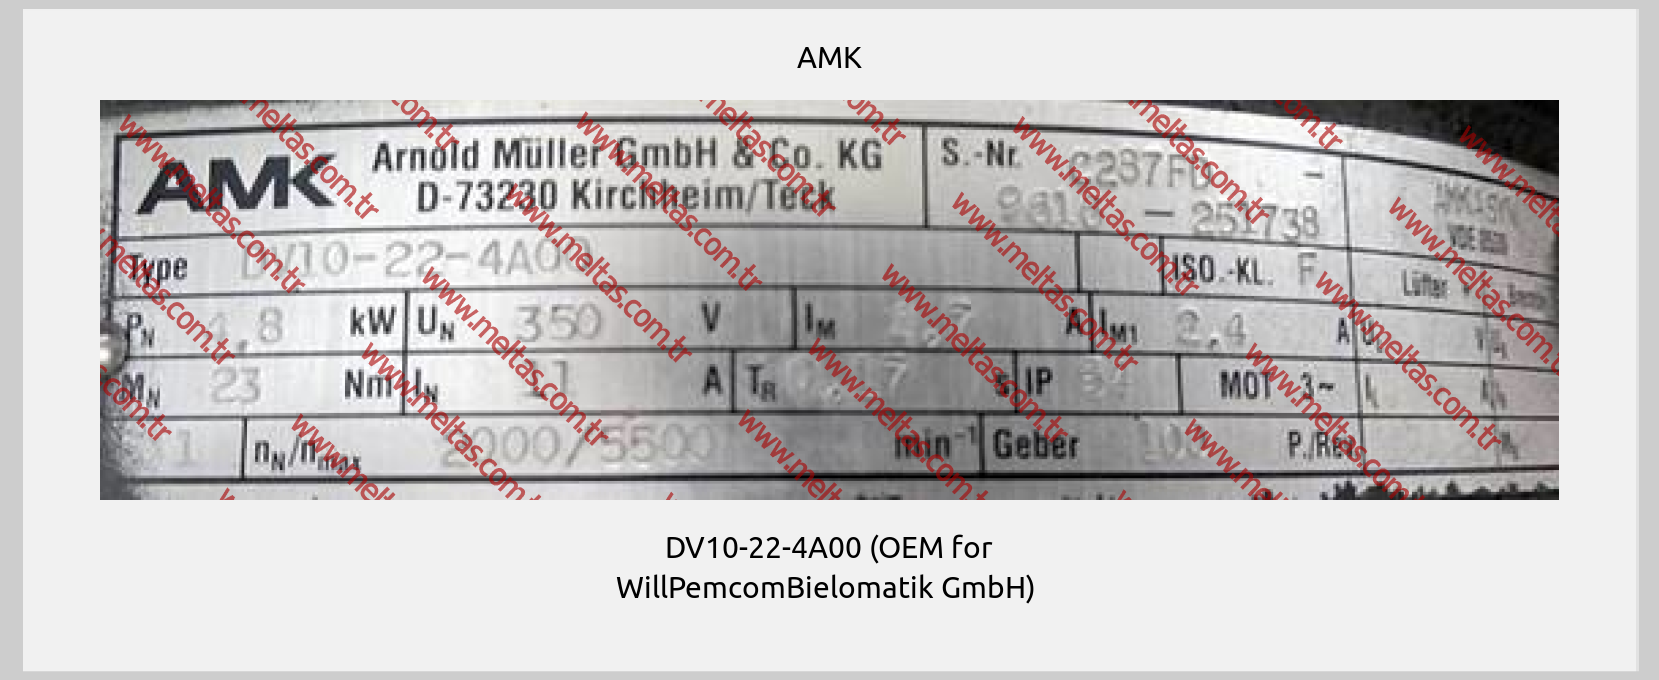 AMK - DV10-22-4A00 (OEM for WillPemcomBielomatik GmbH) 